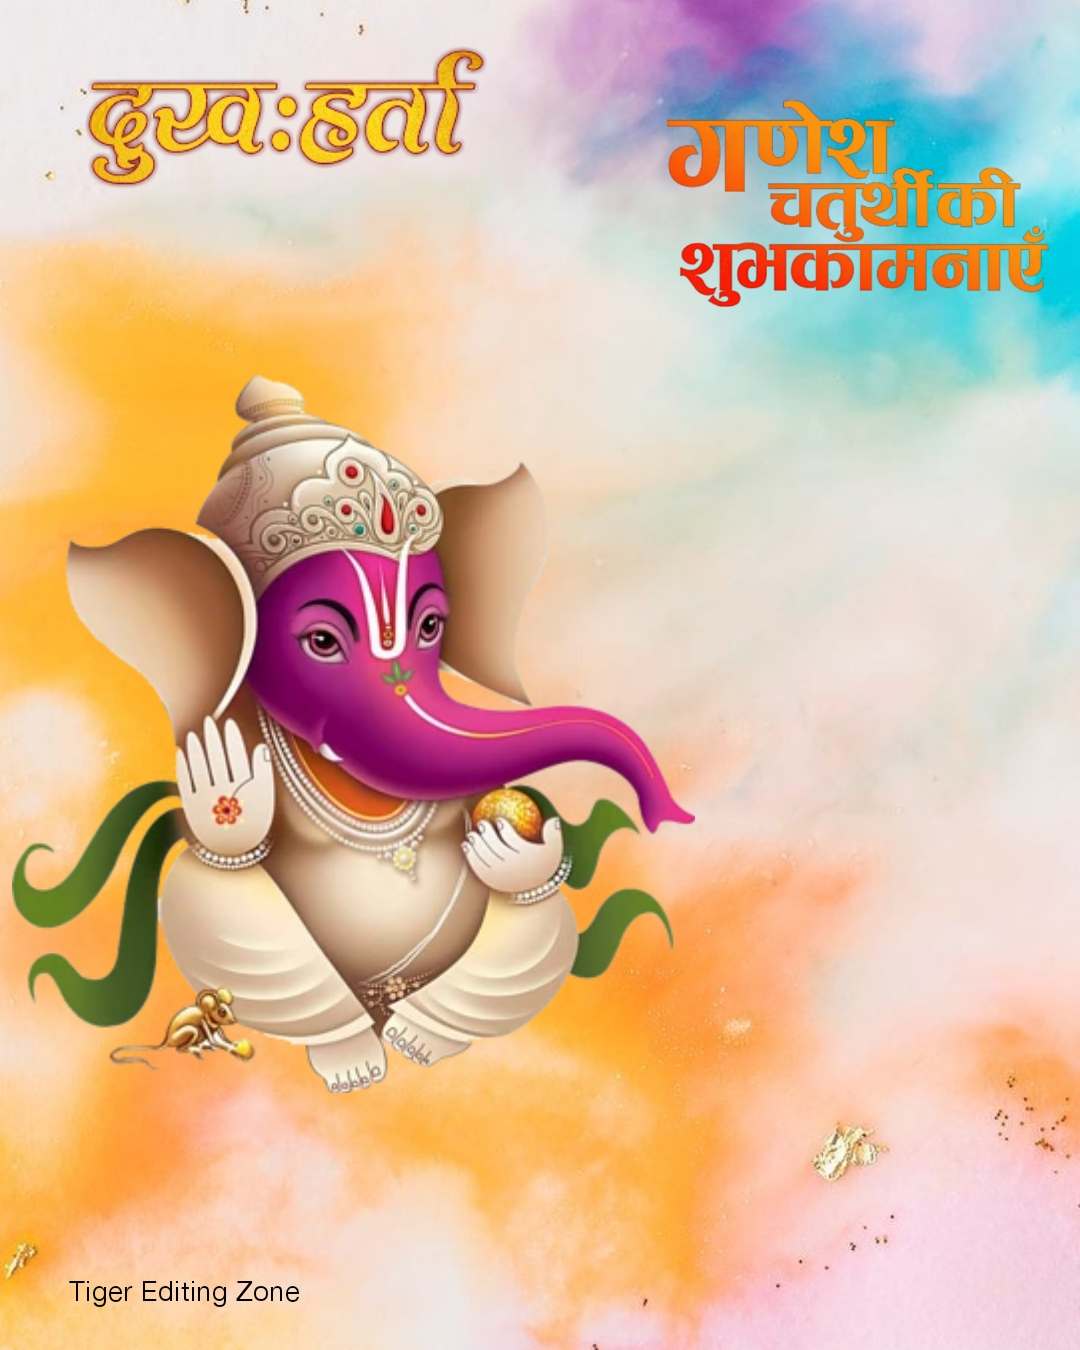 Shri Ganesh Chaturthi HD Background Images